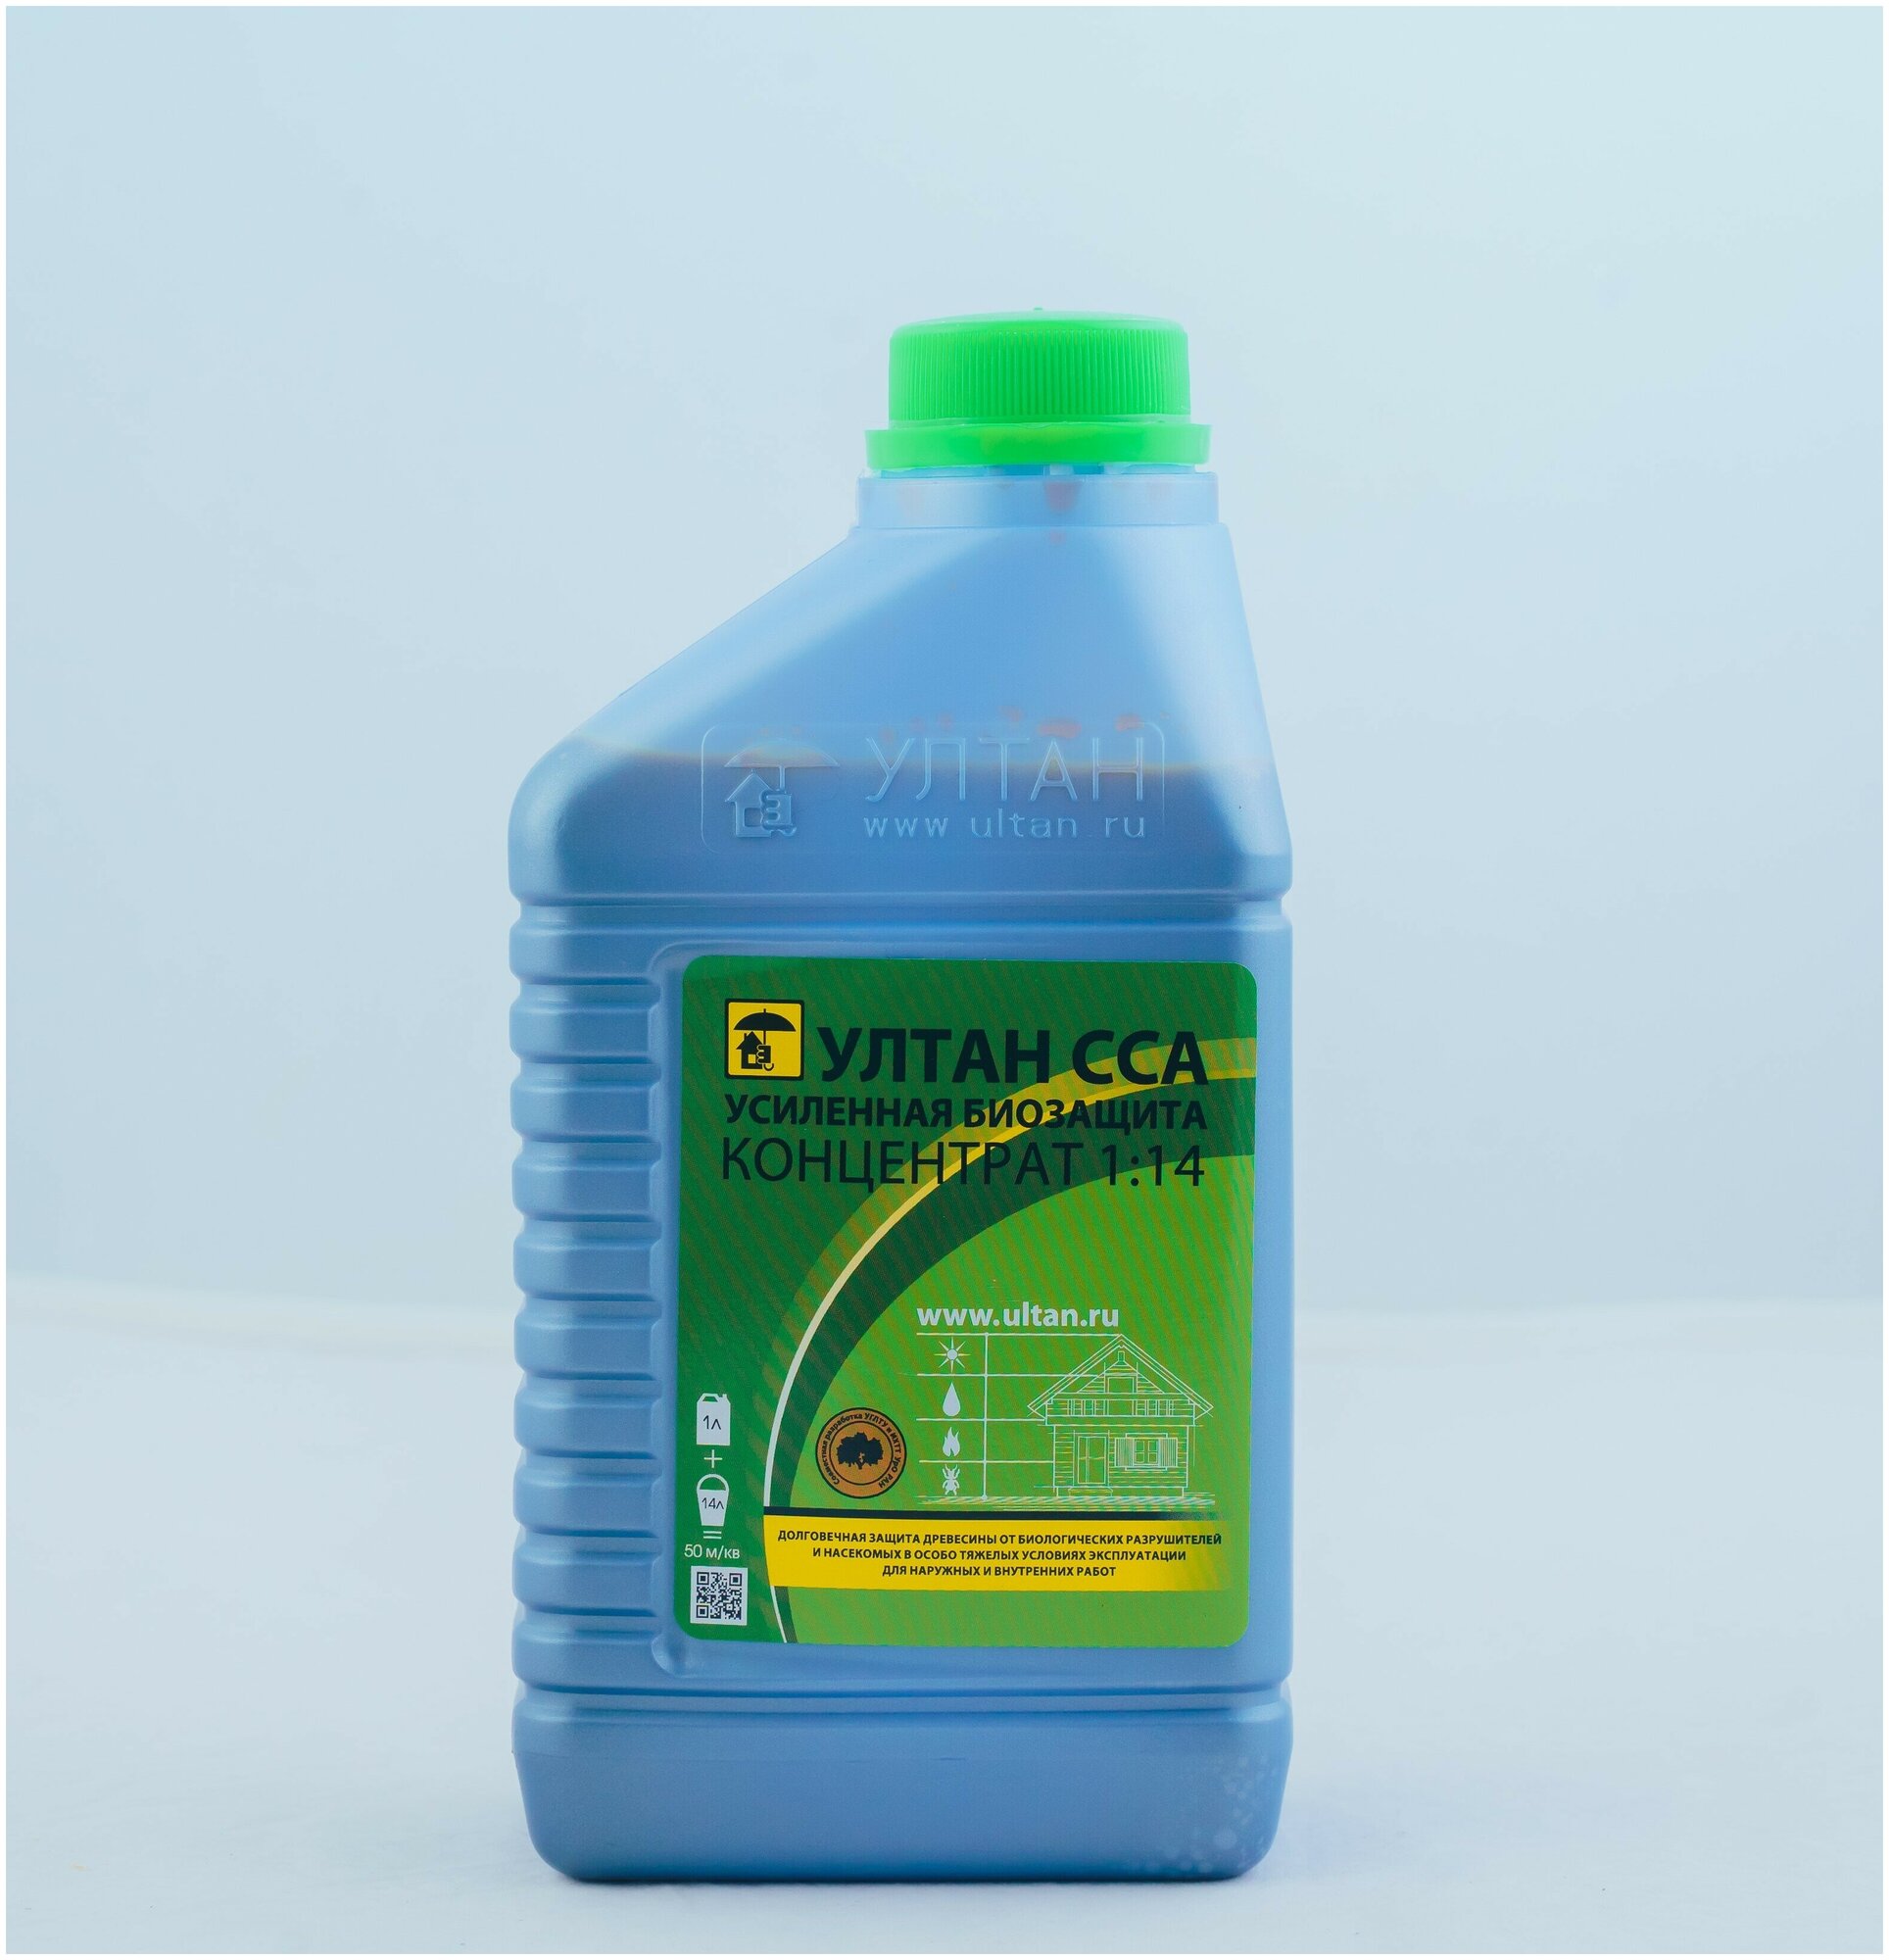 Антисептик "ултан ССА" усиленная биозащита для древесины концентрат 1:14 канистра 1 литр 50 кв. м.